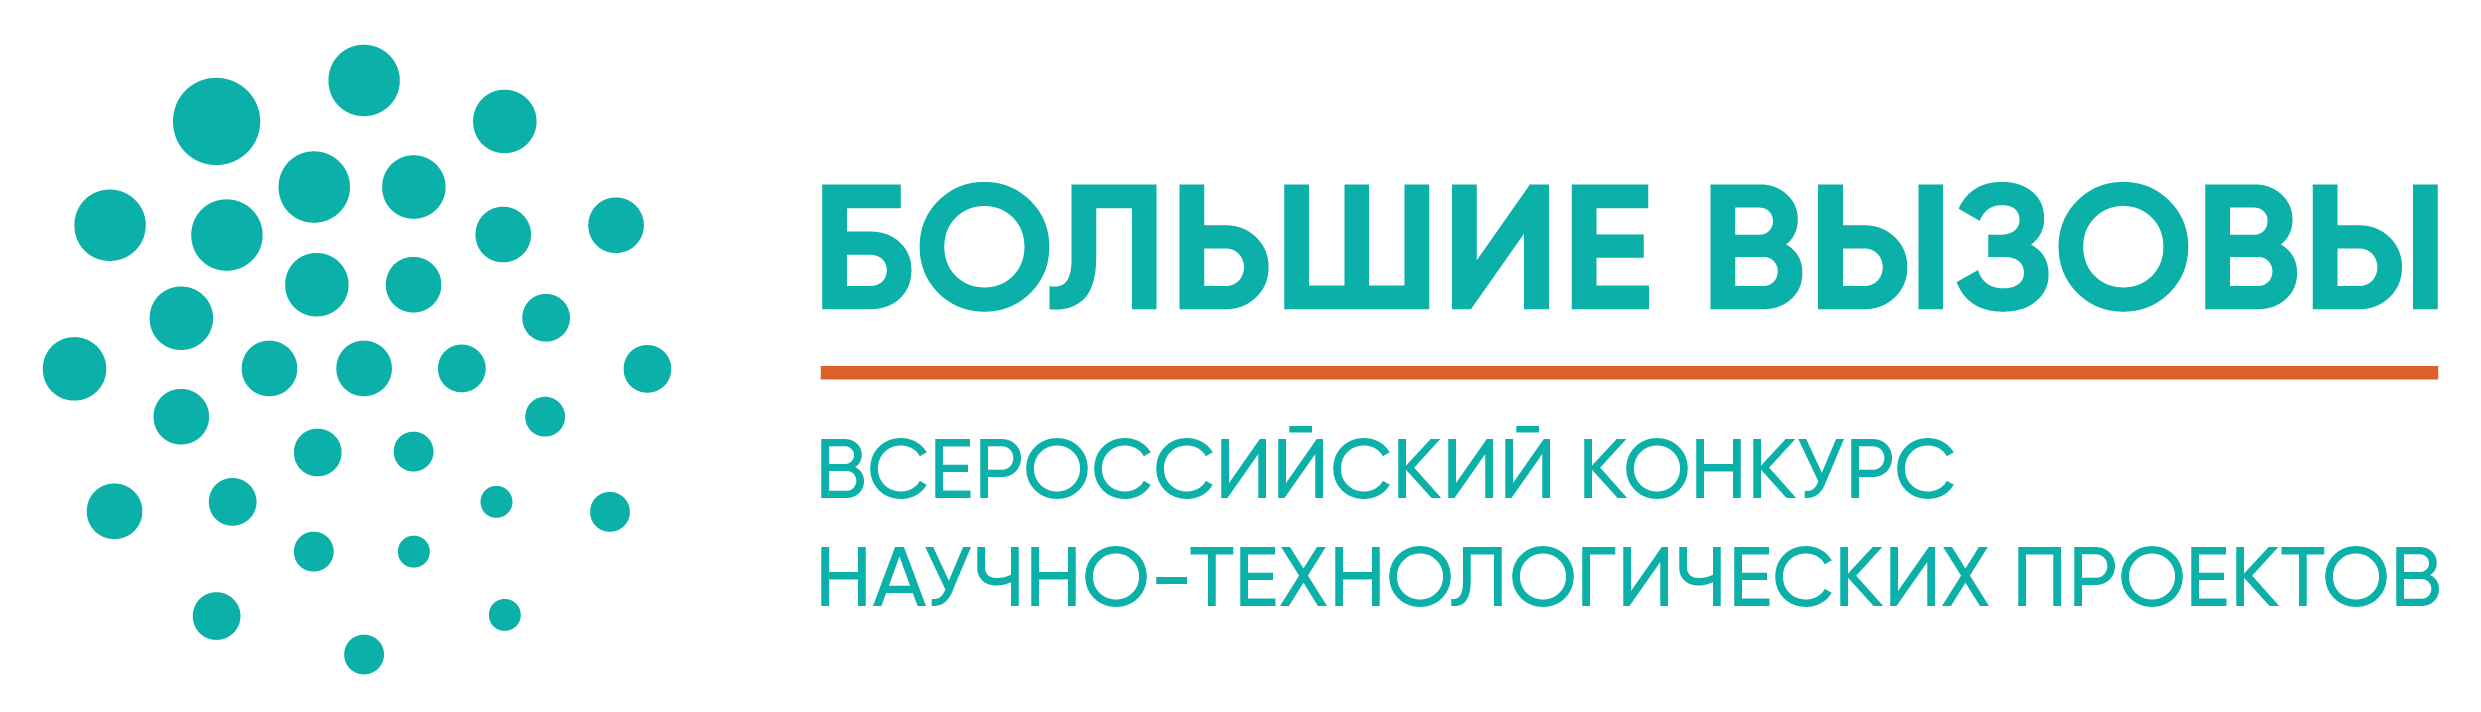 Финал регионального этапа Всероссийского конкурса научно-технологических проектов «Большие вызовы»